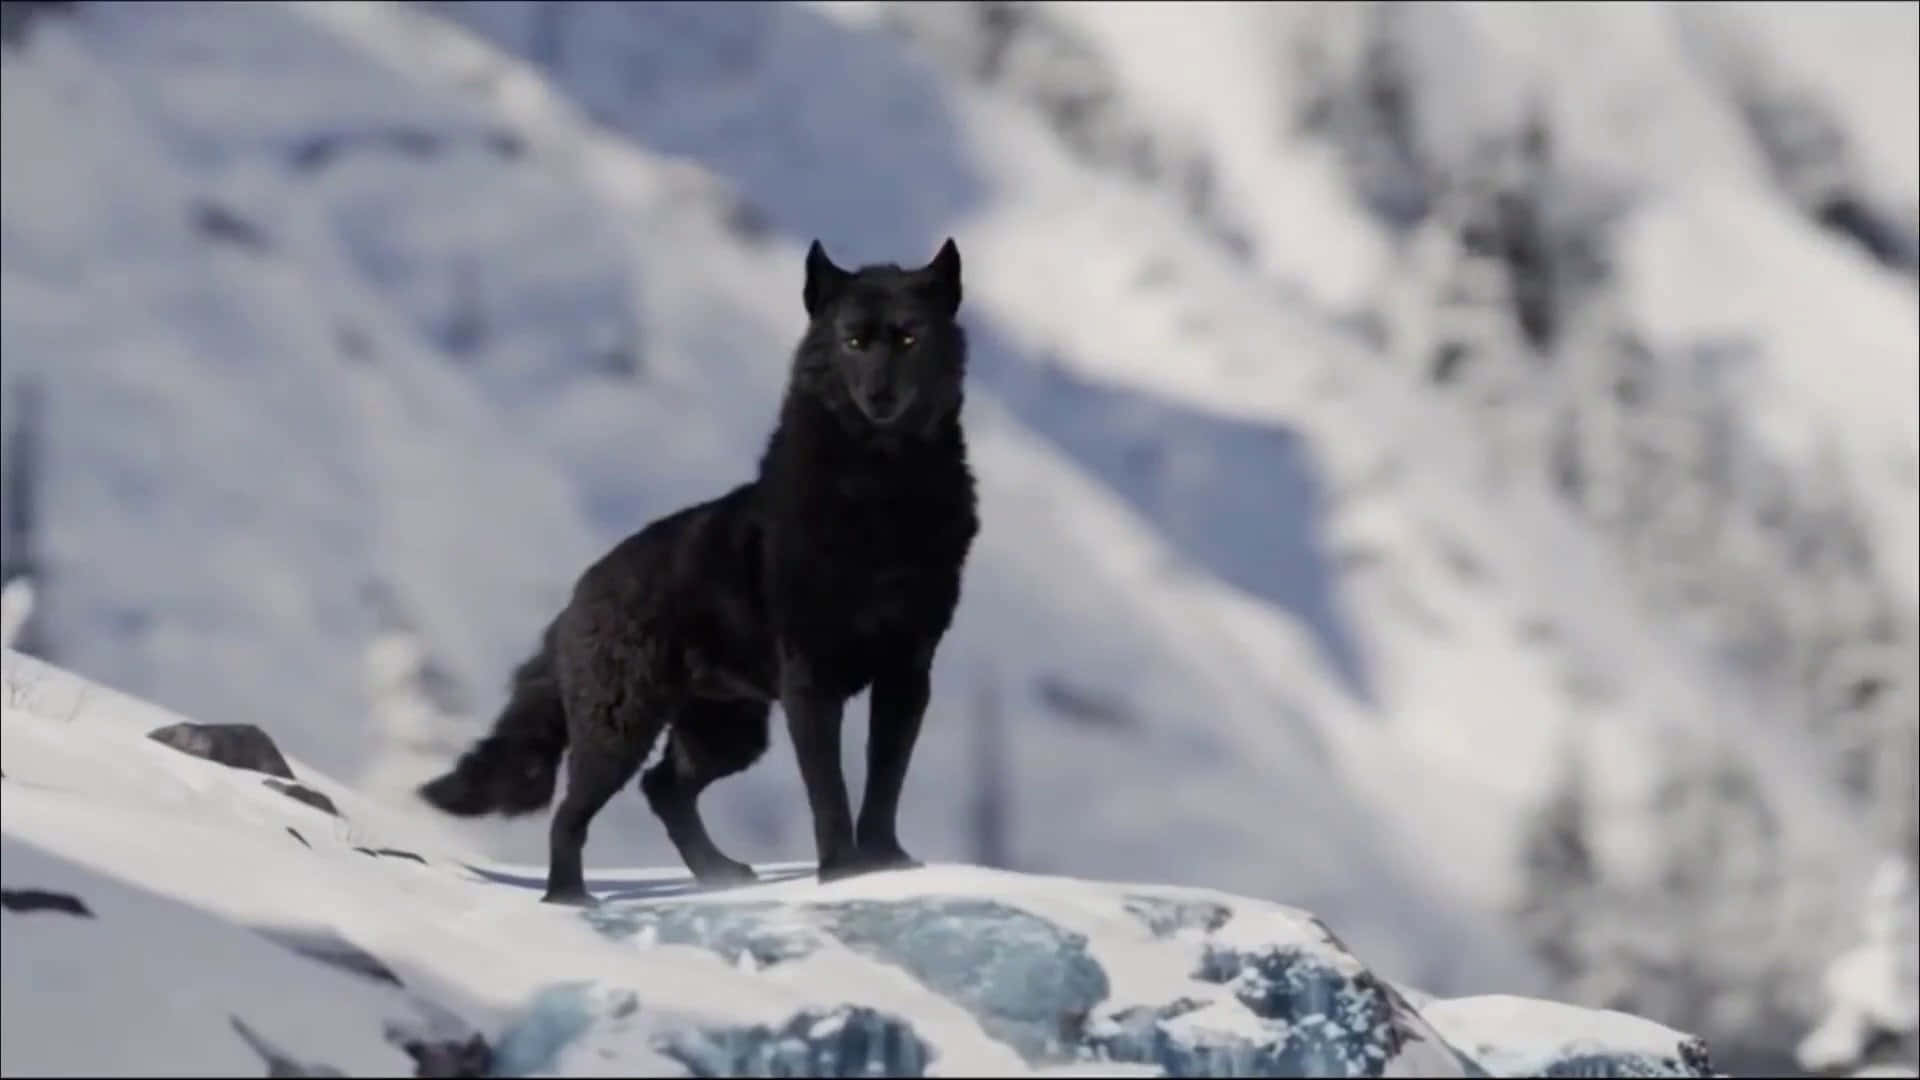 Einmajestätischer Wolf Blickt Auf Den Betrachter, Steht Auf Einem Hügel Und Ist Von Schnee Umgeben.